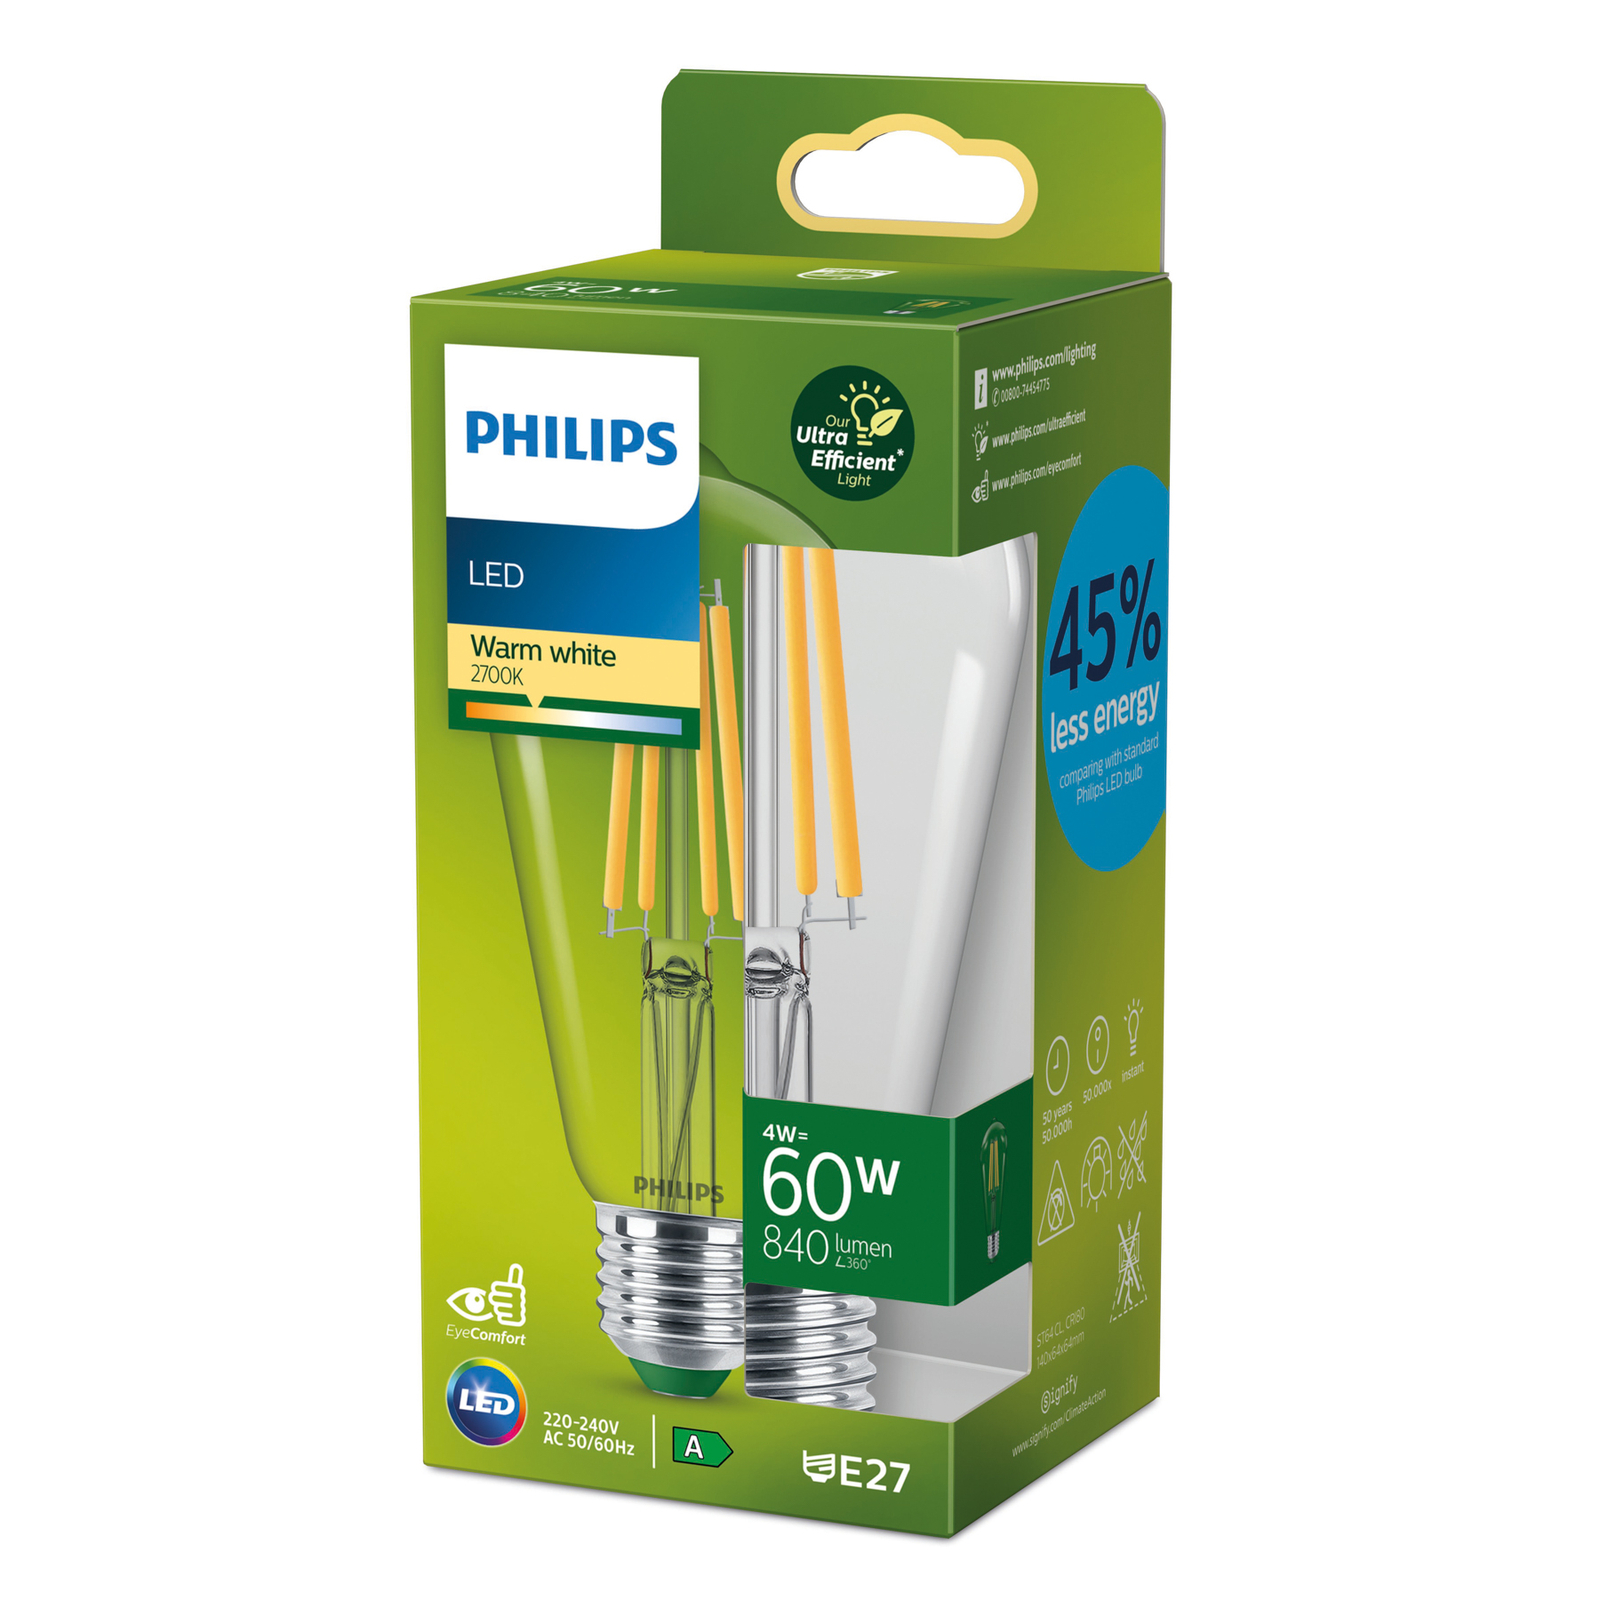 Philips E27 LED lamp ST64 4W 840lm 2.700K helder